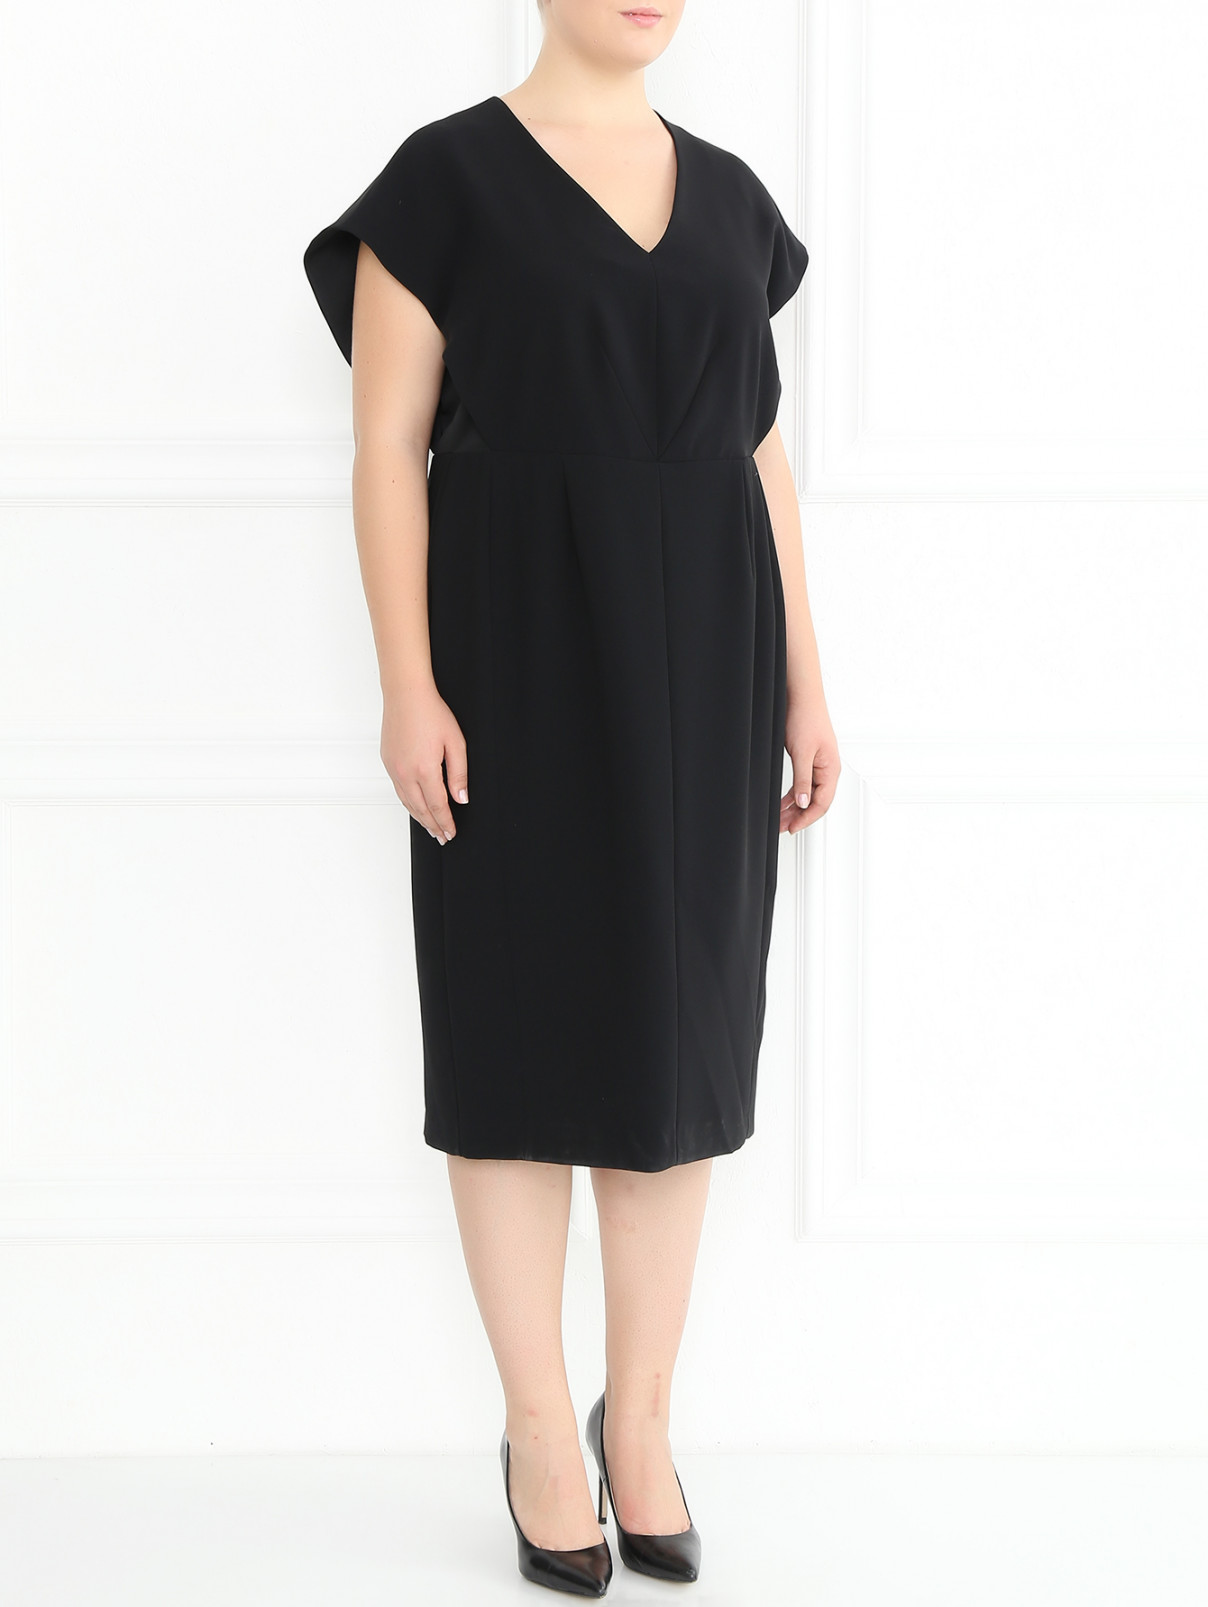 Платье-футляр с рукавами "летучая мышь" Marina Rinaldi  –  Модель Общий вид  – Цвет:  Черный